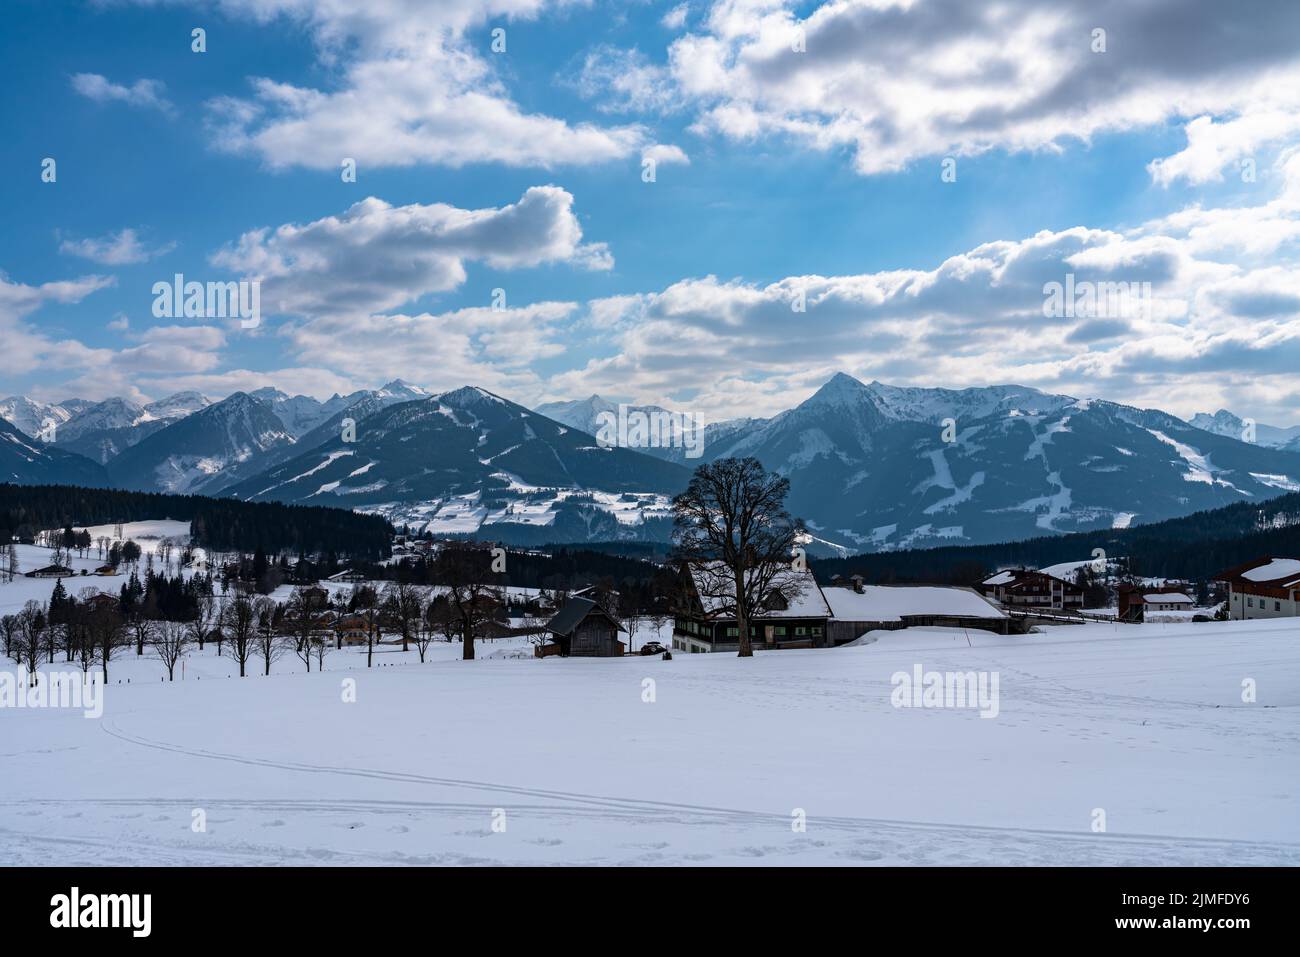 Schöne Panoramasicht auf Ramsau am Dachstein Dorf und Schladming mit Planai, Hochwurzen und anderen Gipfeln der Alpen im Hintergrund mit blauem Himmel Clou Stockfoto